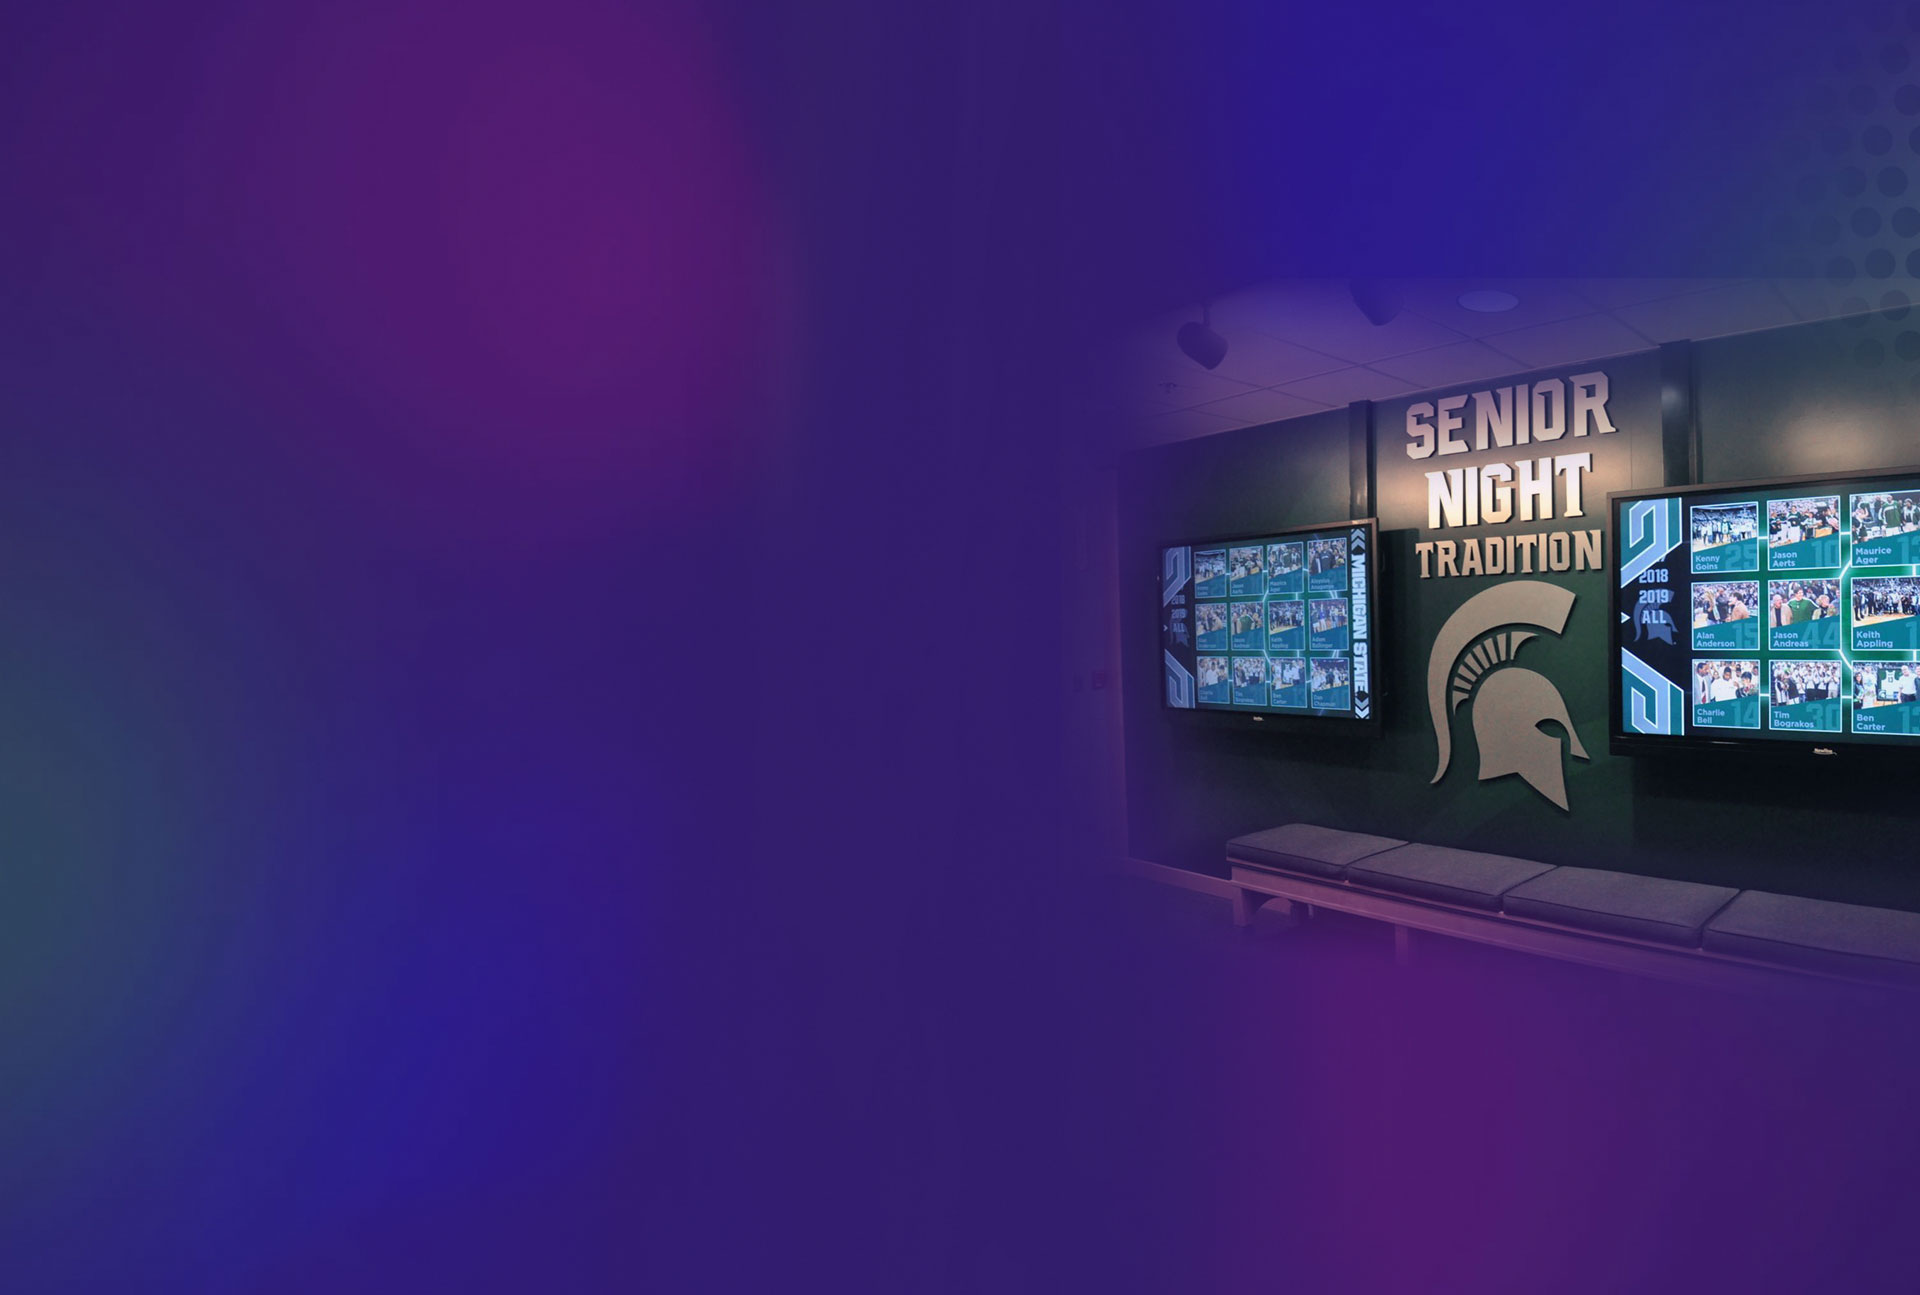 Image de héros du mur des célébrités de l'université de l'État du Michigan utilisant la technologie d'affichage numérique BrightSign